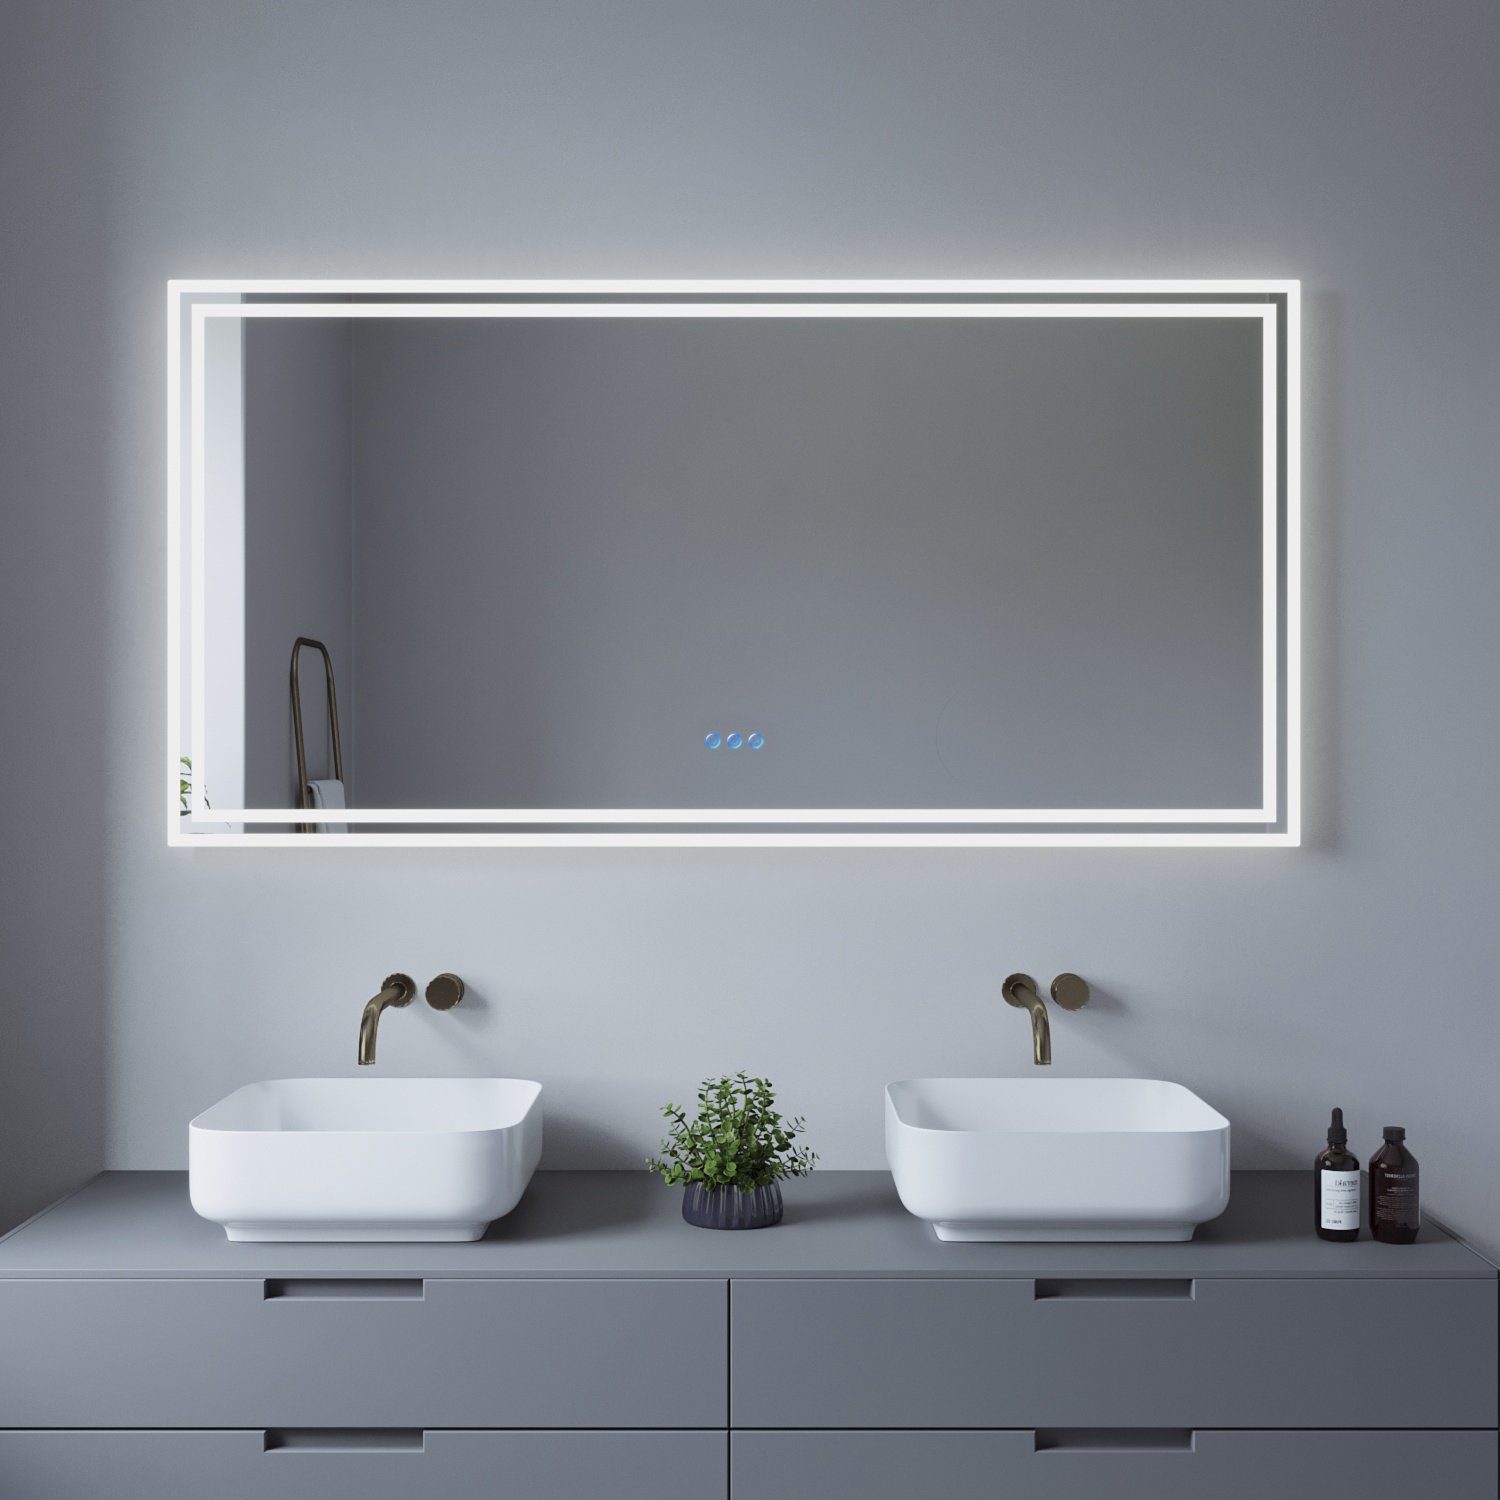 Großer Badspiegel Badezimmer 140x70 AQUALAVOS Wandspiegel Energiesparend, LED & Warmweiß Beleuchtung, 3000K, Badspiegel mit Touchschalter 6400K cm Kaltweiß